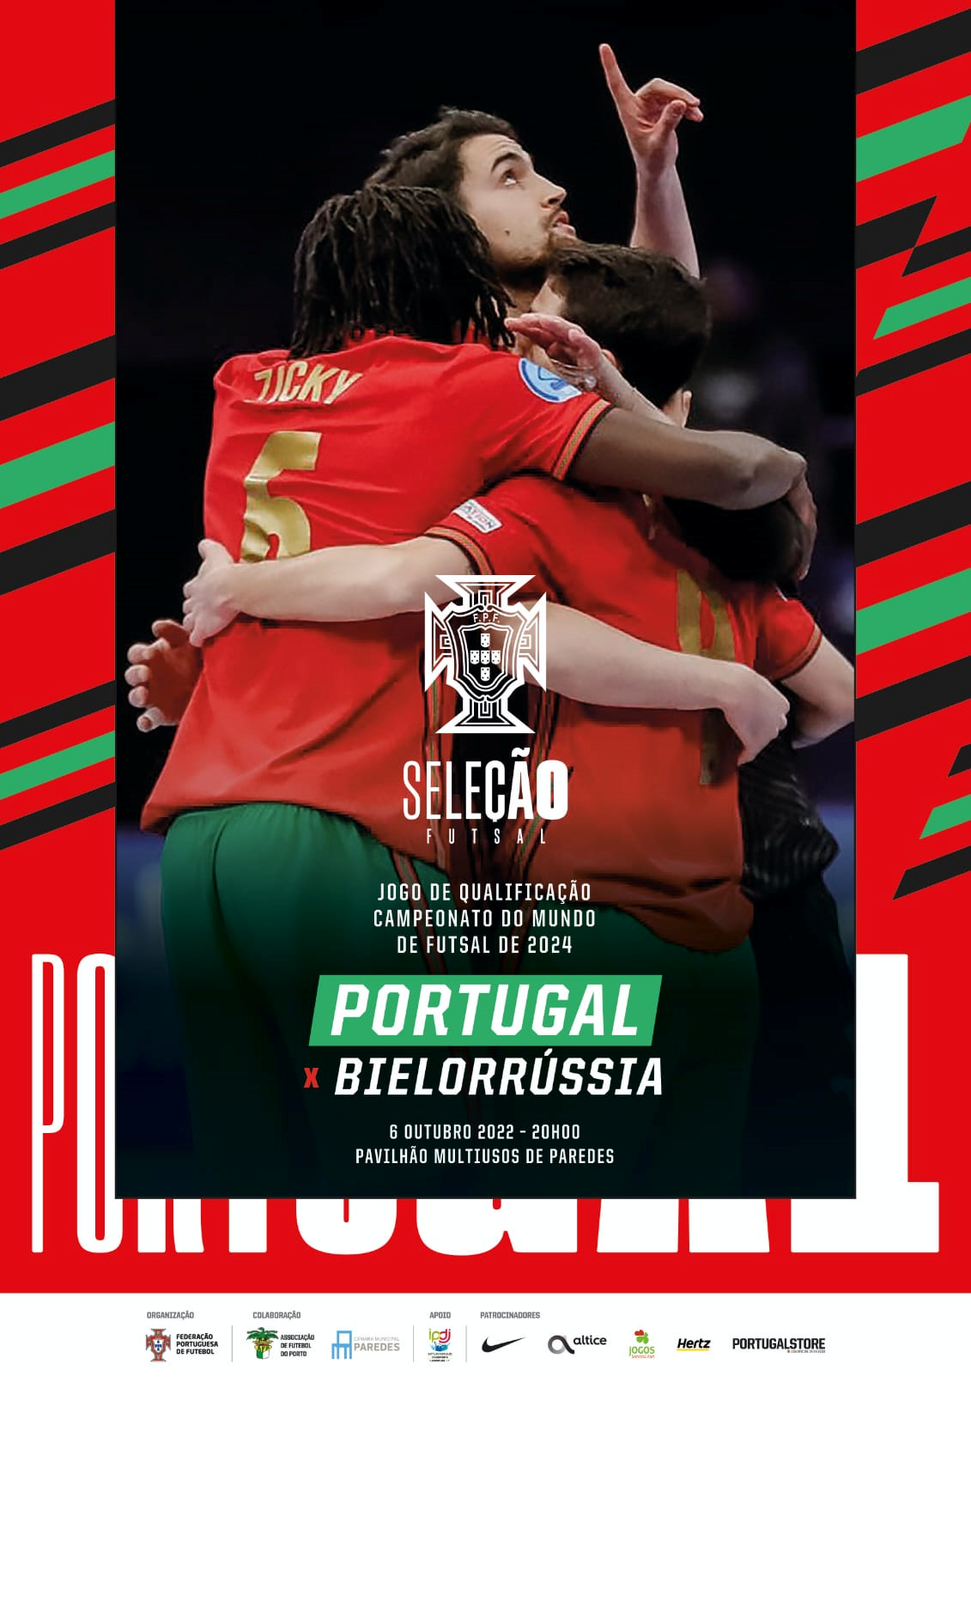 Jogo de Qualificação para o Mundial 2024 de Futsal – Portugal x Bielorrússia